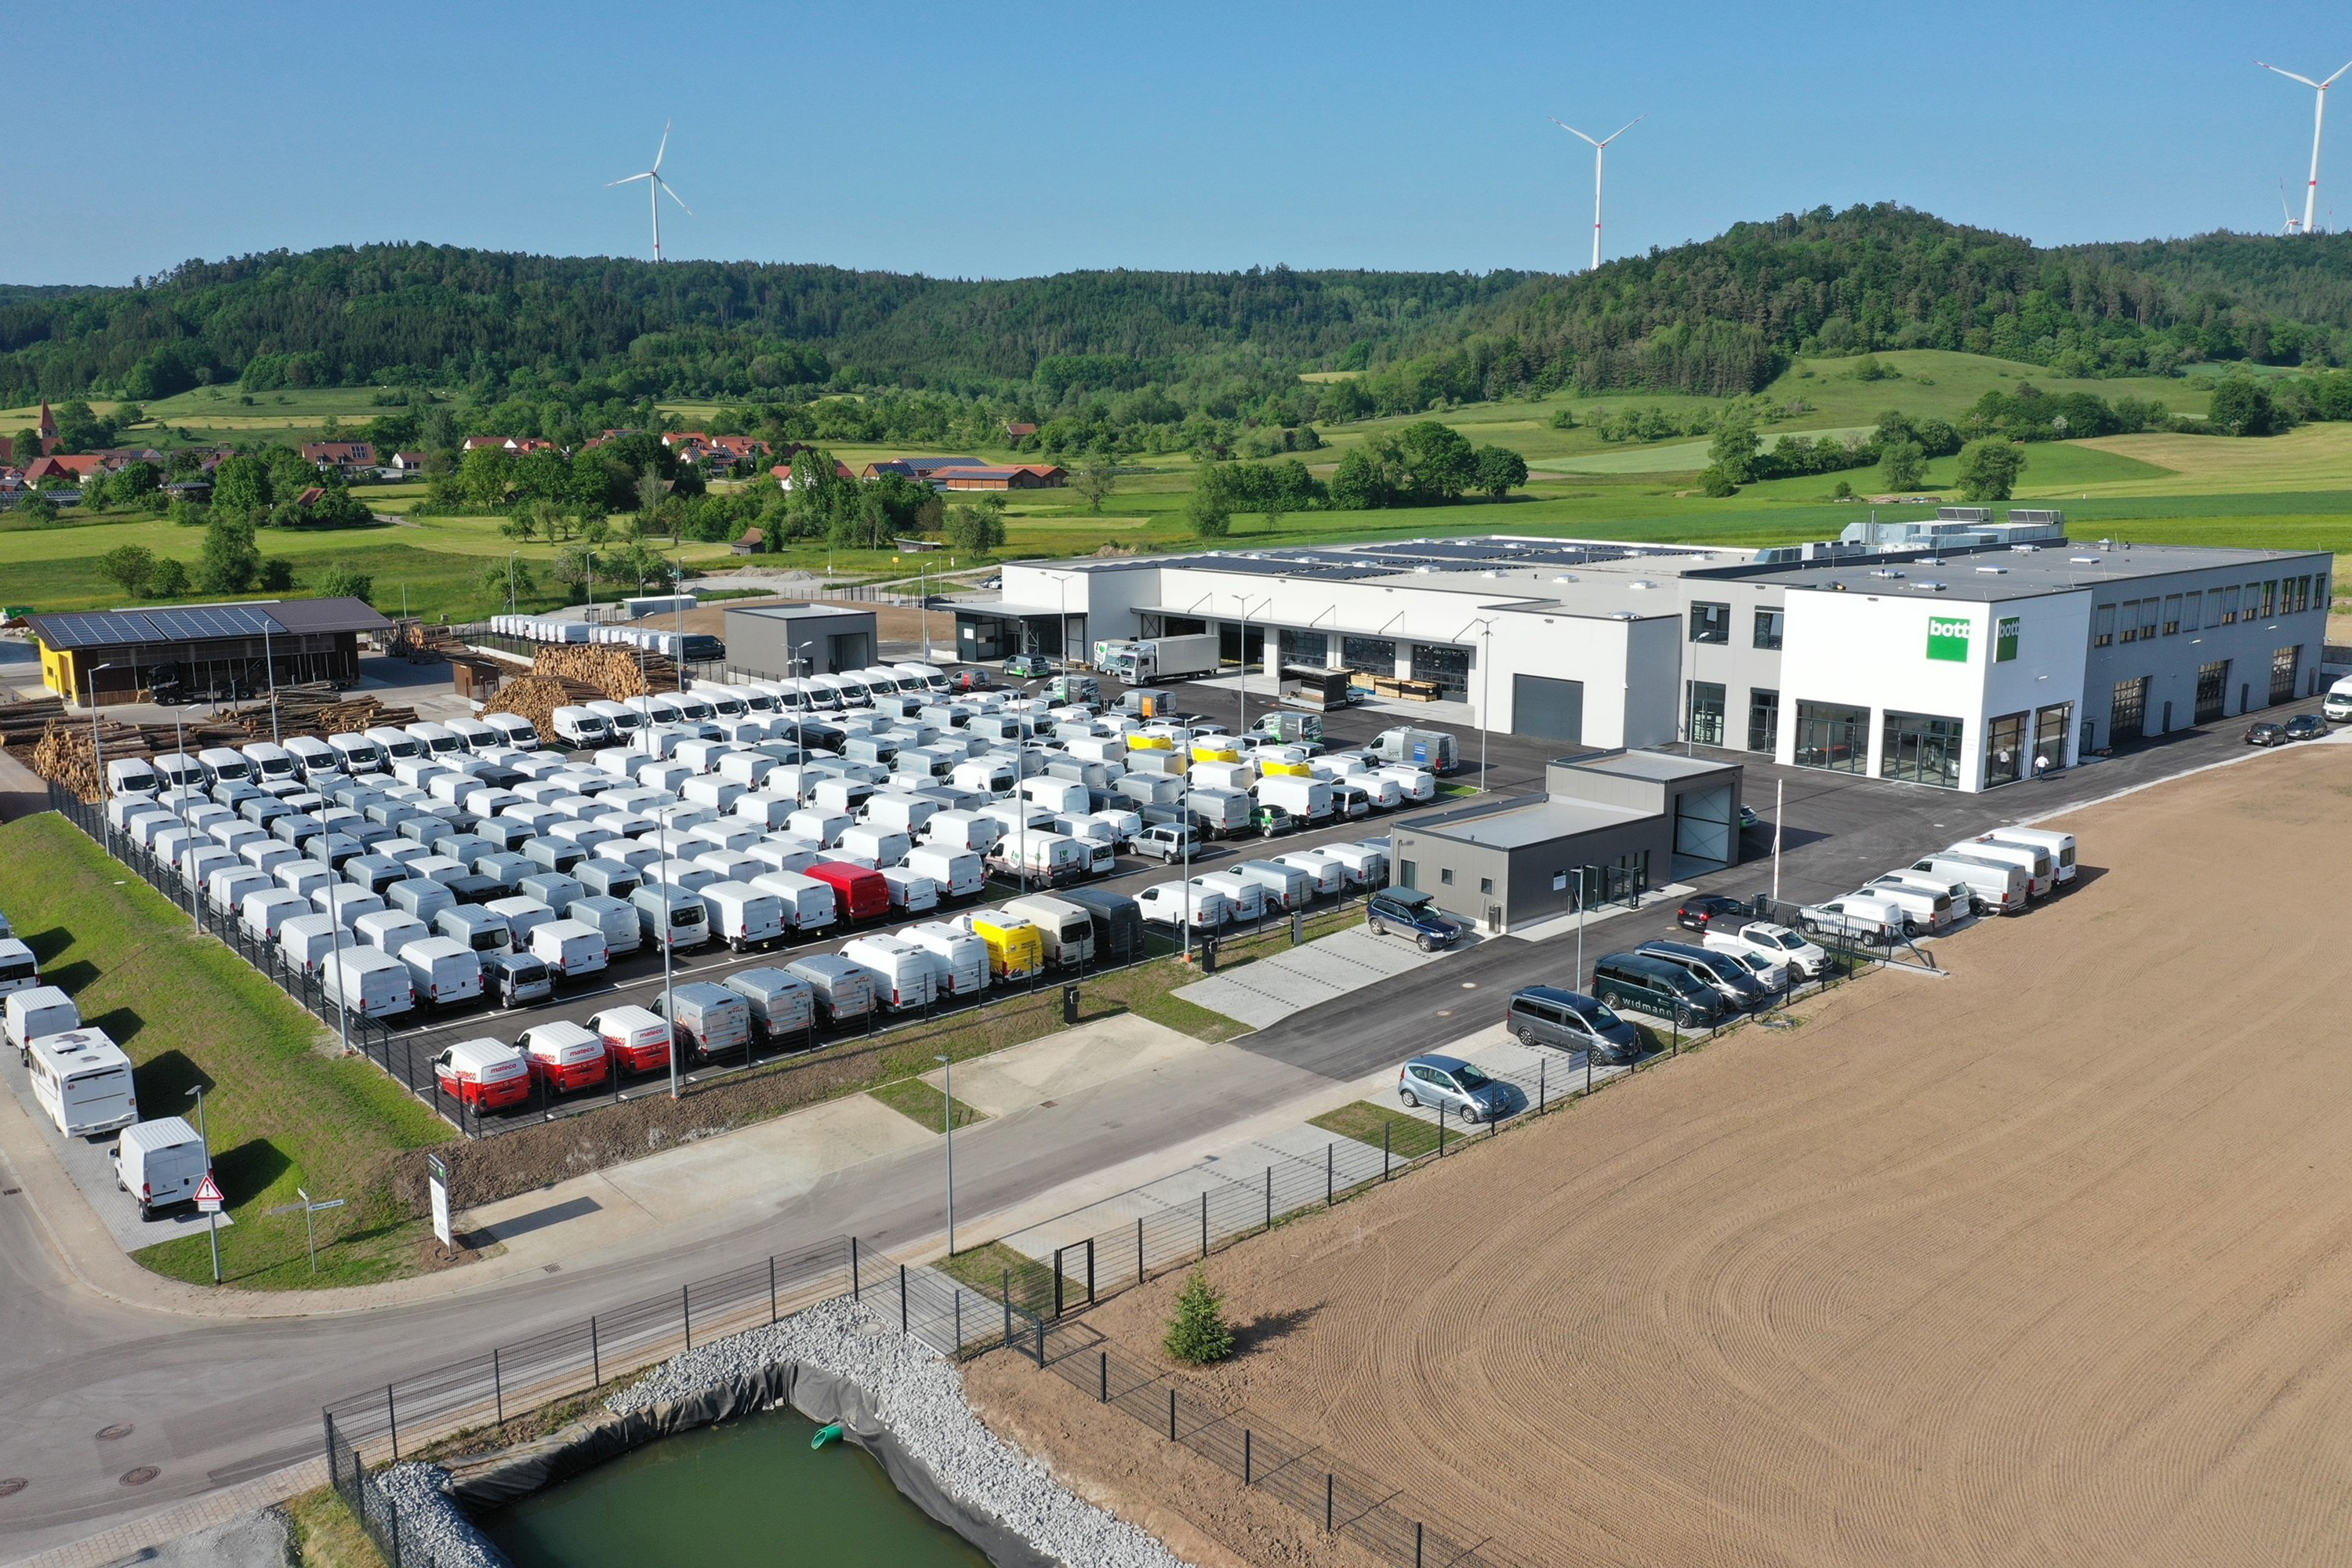 Neues Kundencenter mit Außenbereich für etwa 300 Kundenfahrzeuge in Gaildorf Münster